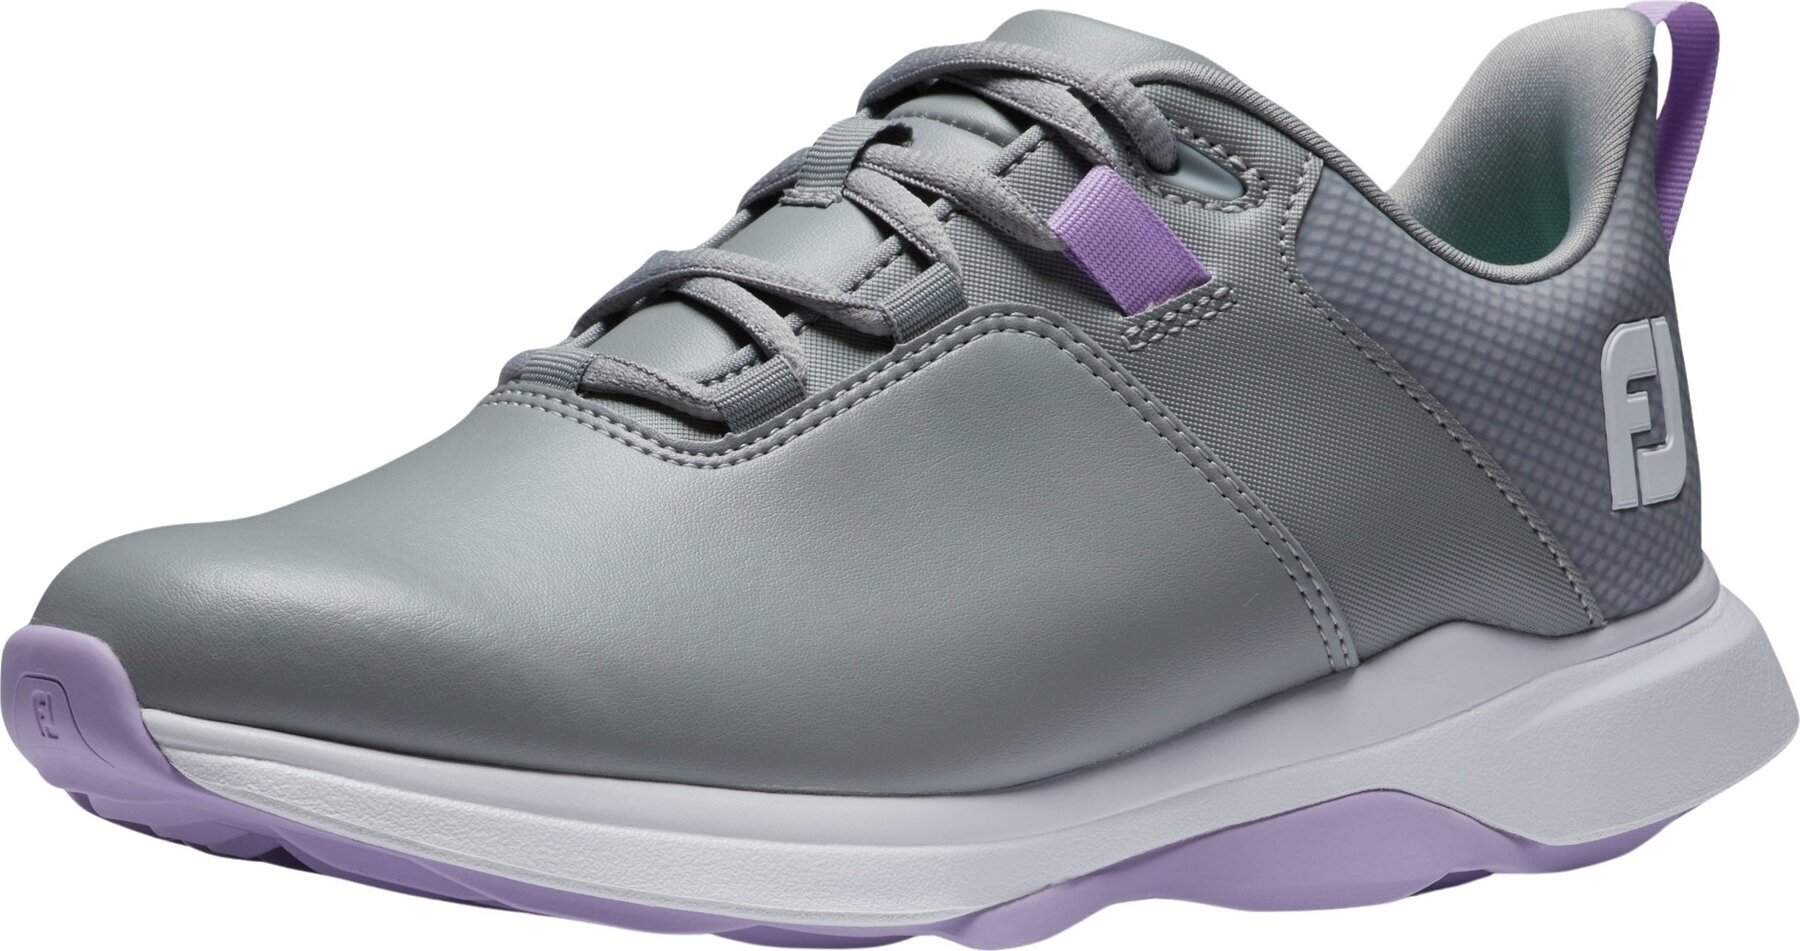 Chaussures de golf pour femmes Footjoy ProLite Womens Golf Shoes Grey/Lilac 41